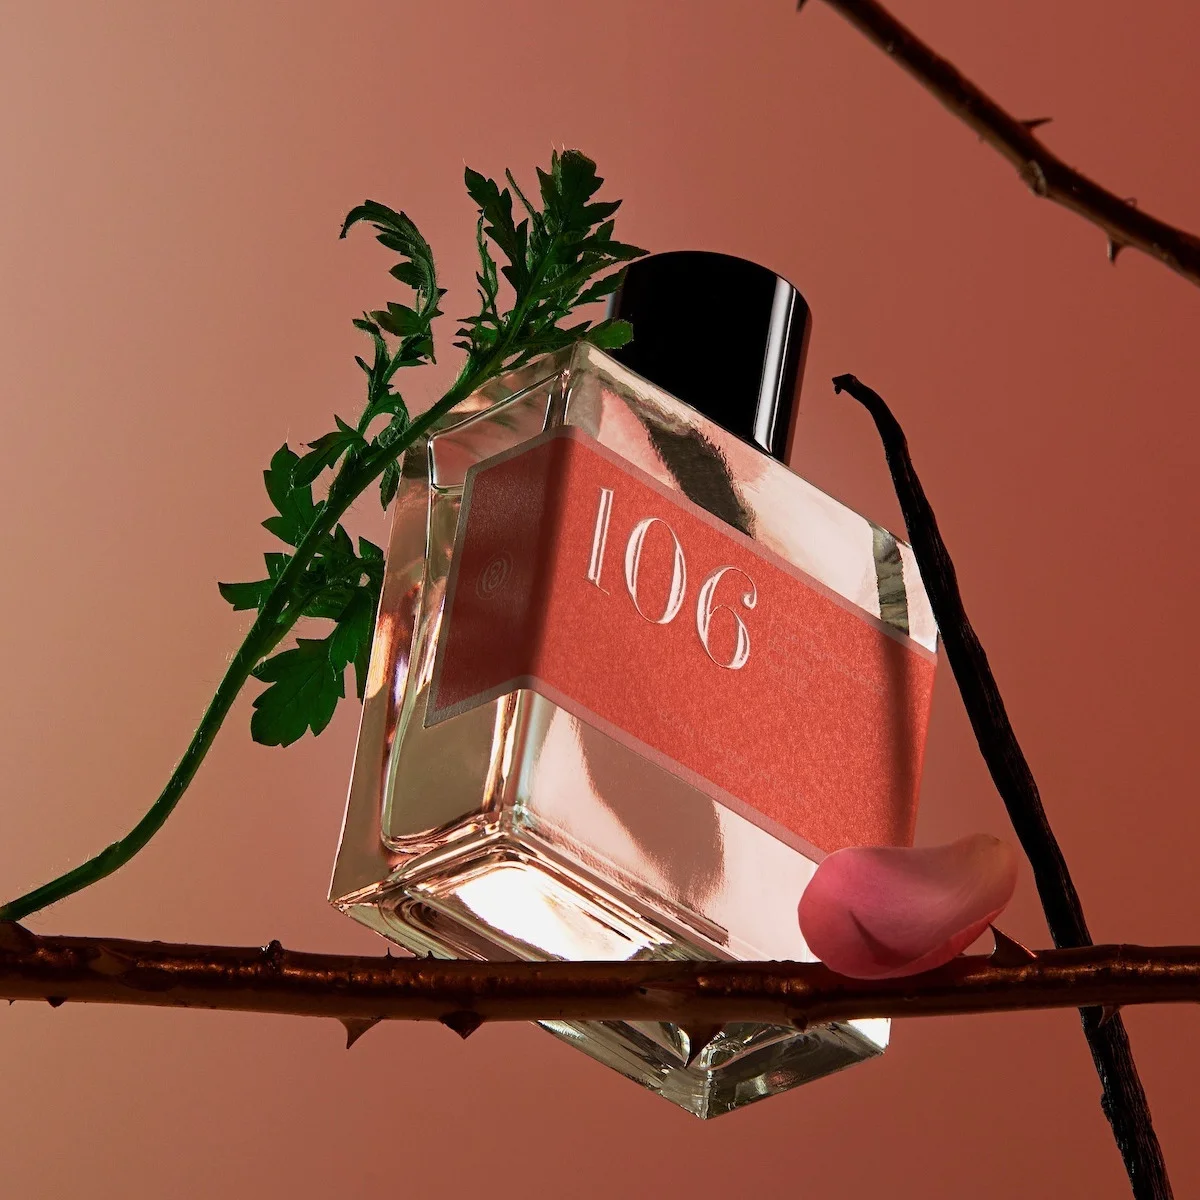 アップサイクルされたローズを使用【ボン パフューマー】新作は、パリの庭園に咲くローズ・ド・メイ（5月のバラ）をイメージ